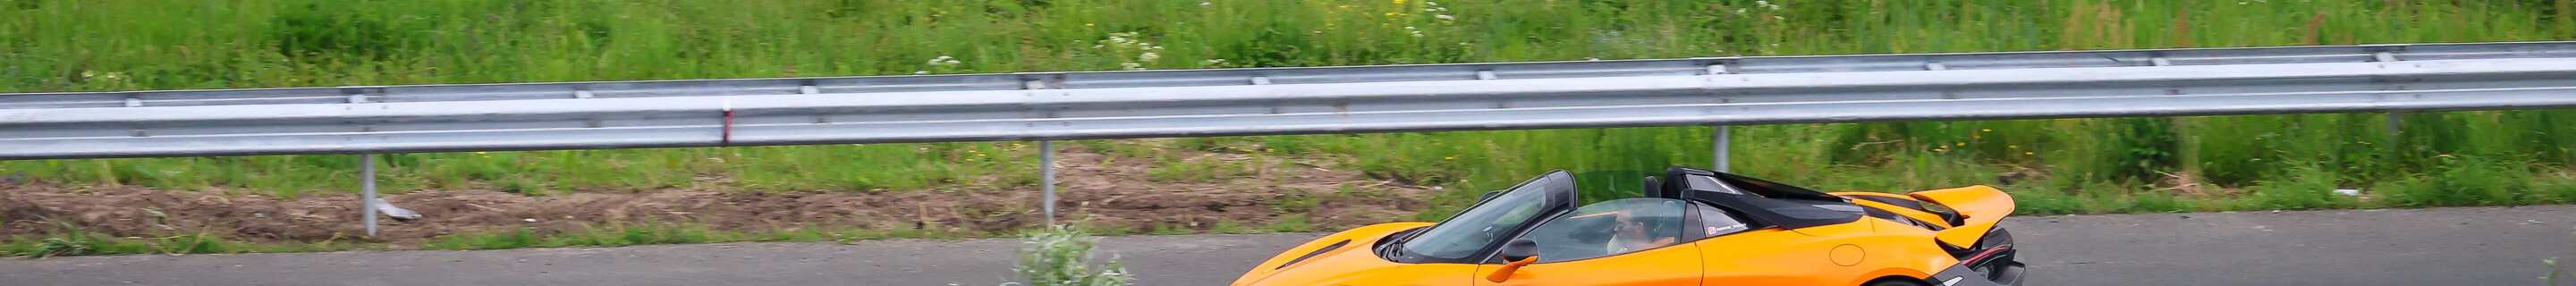 McLaren 720S Spider